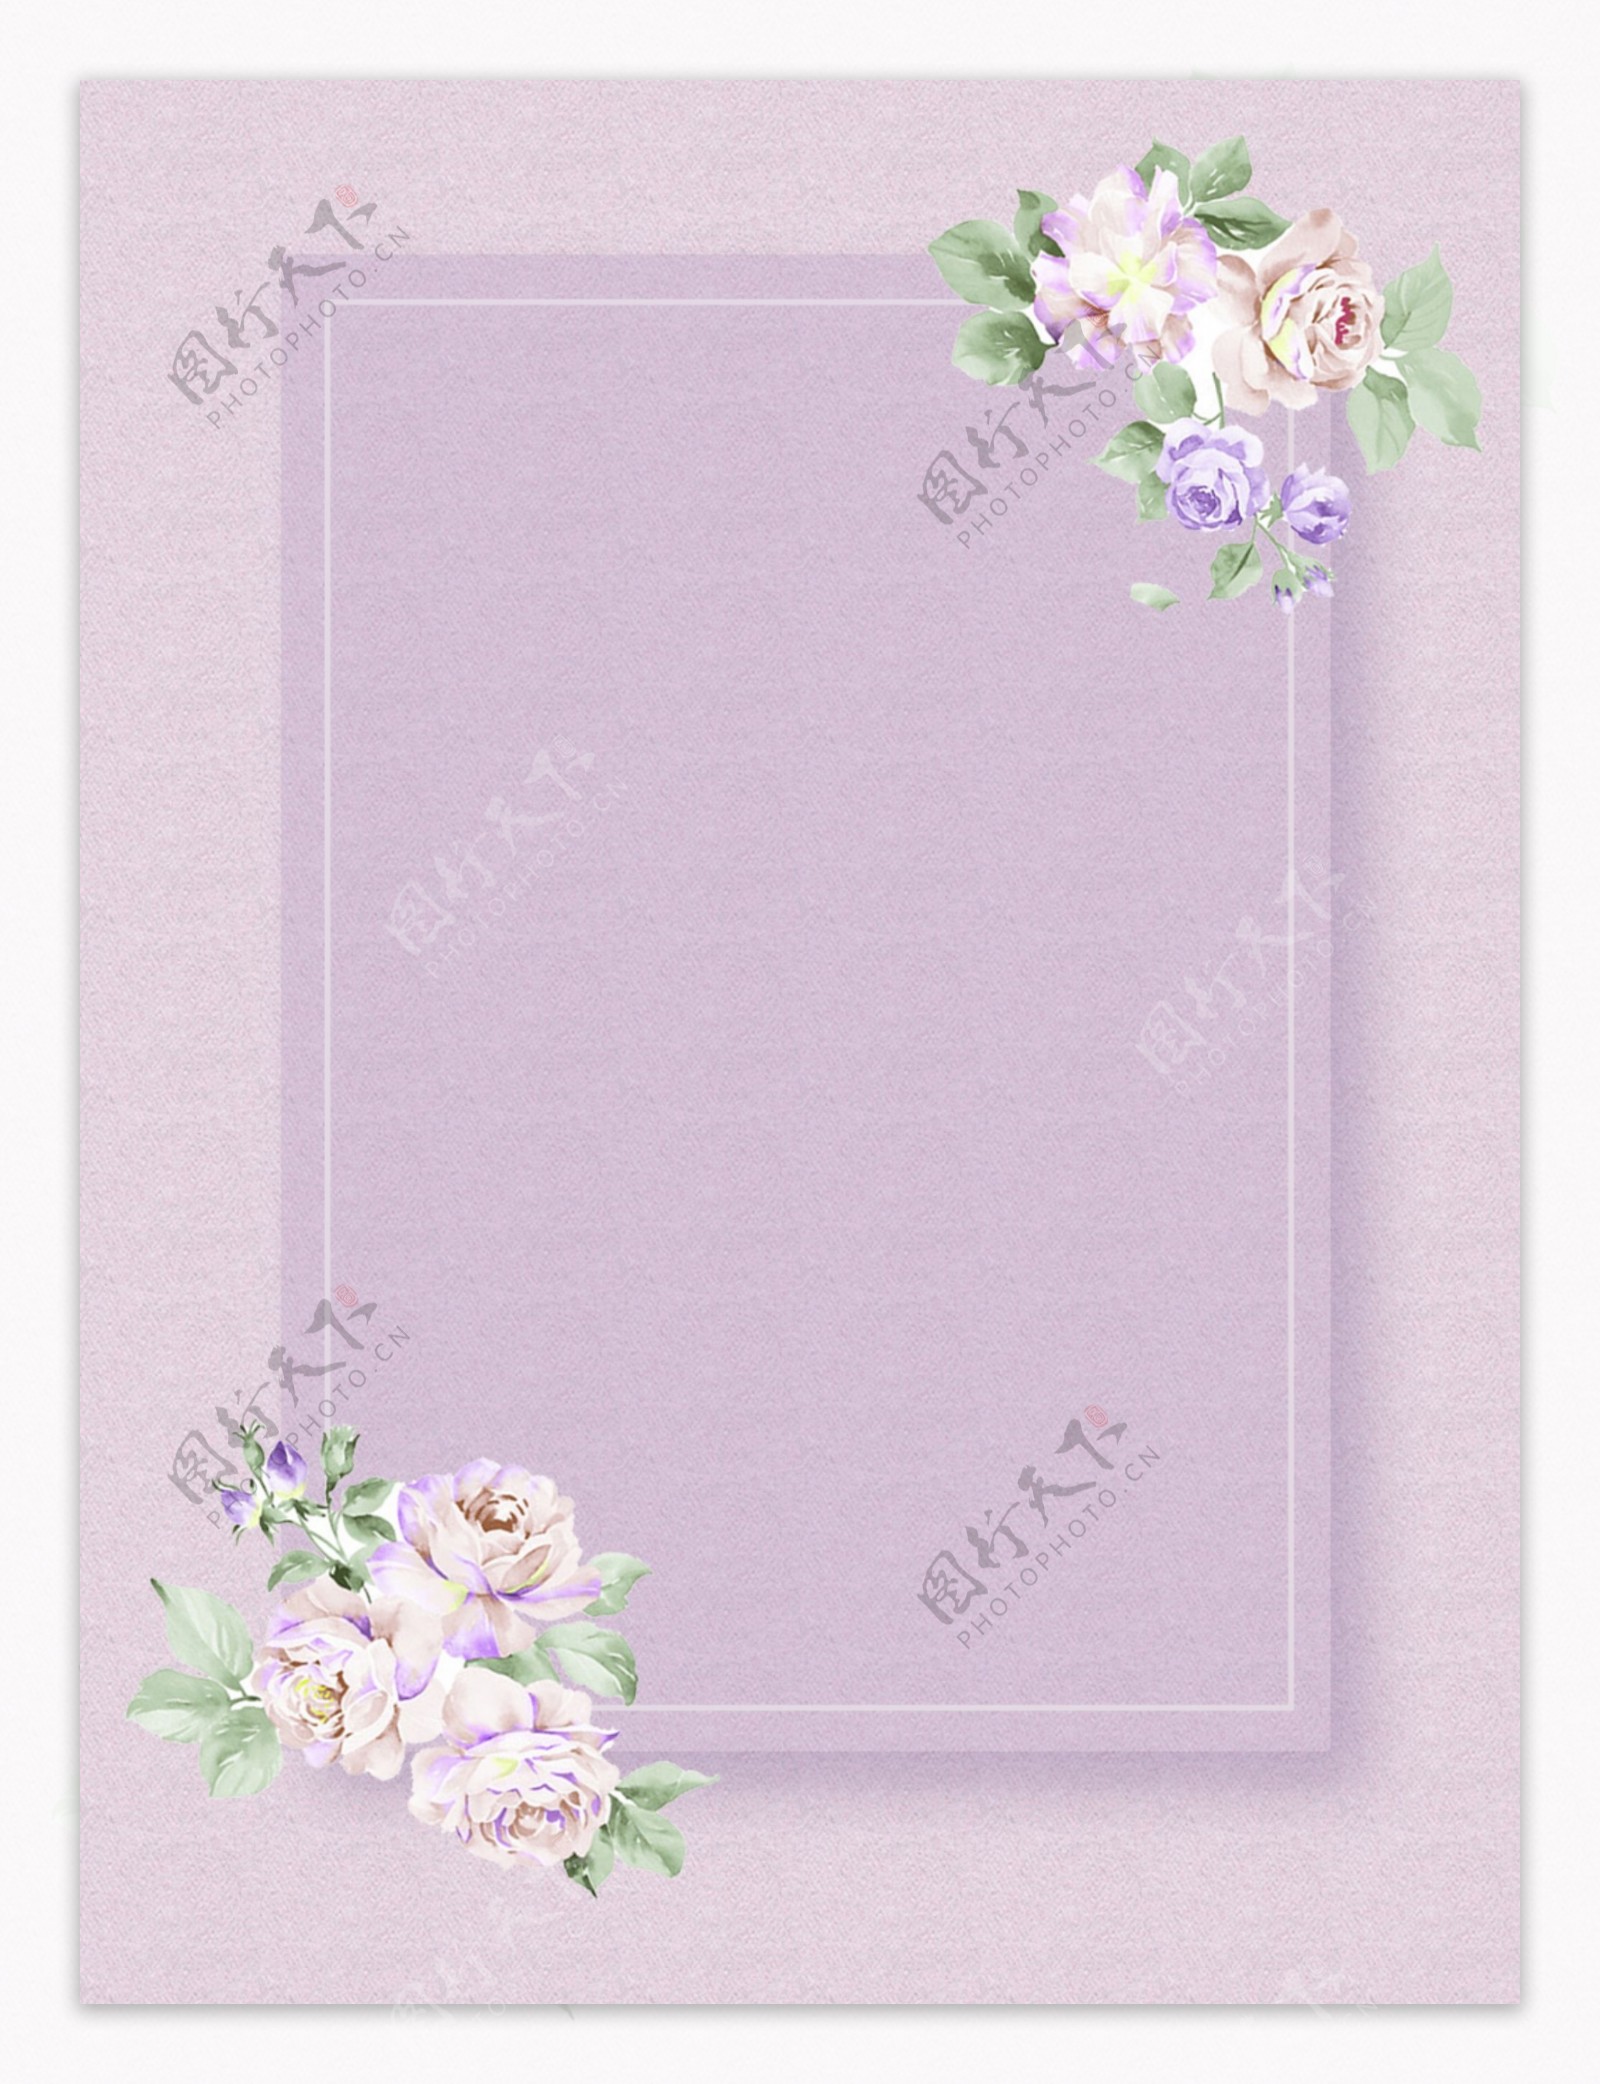 原创玫瑰小清新花朵绿植简约紫色背景素材